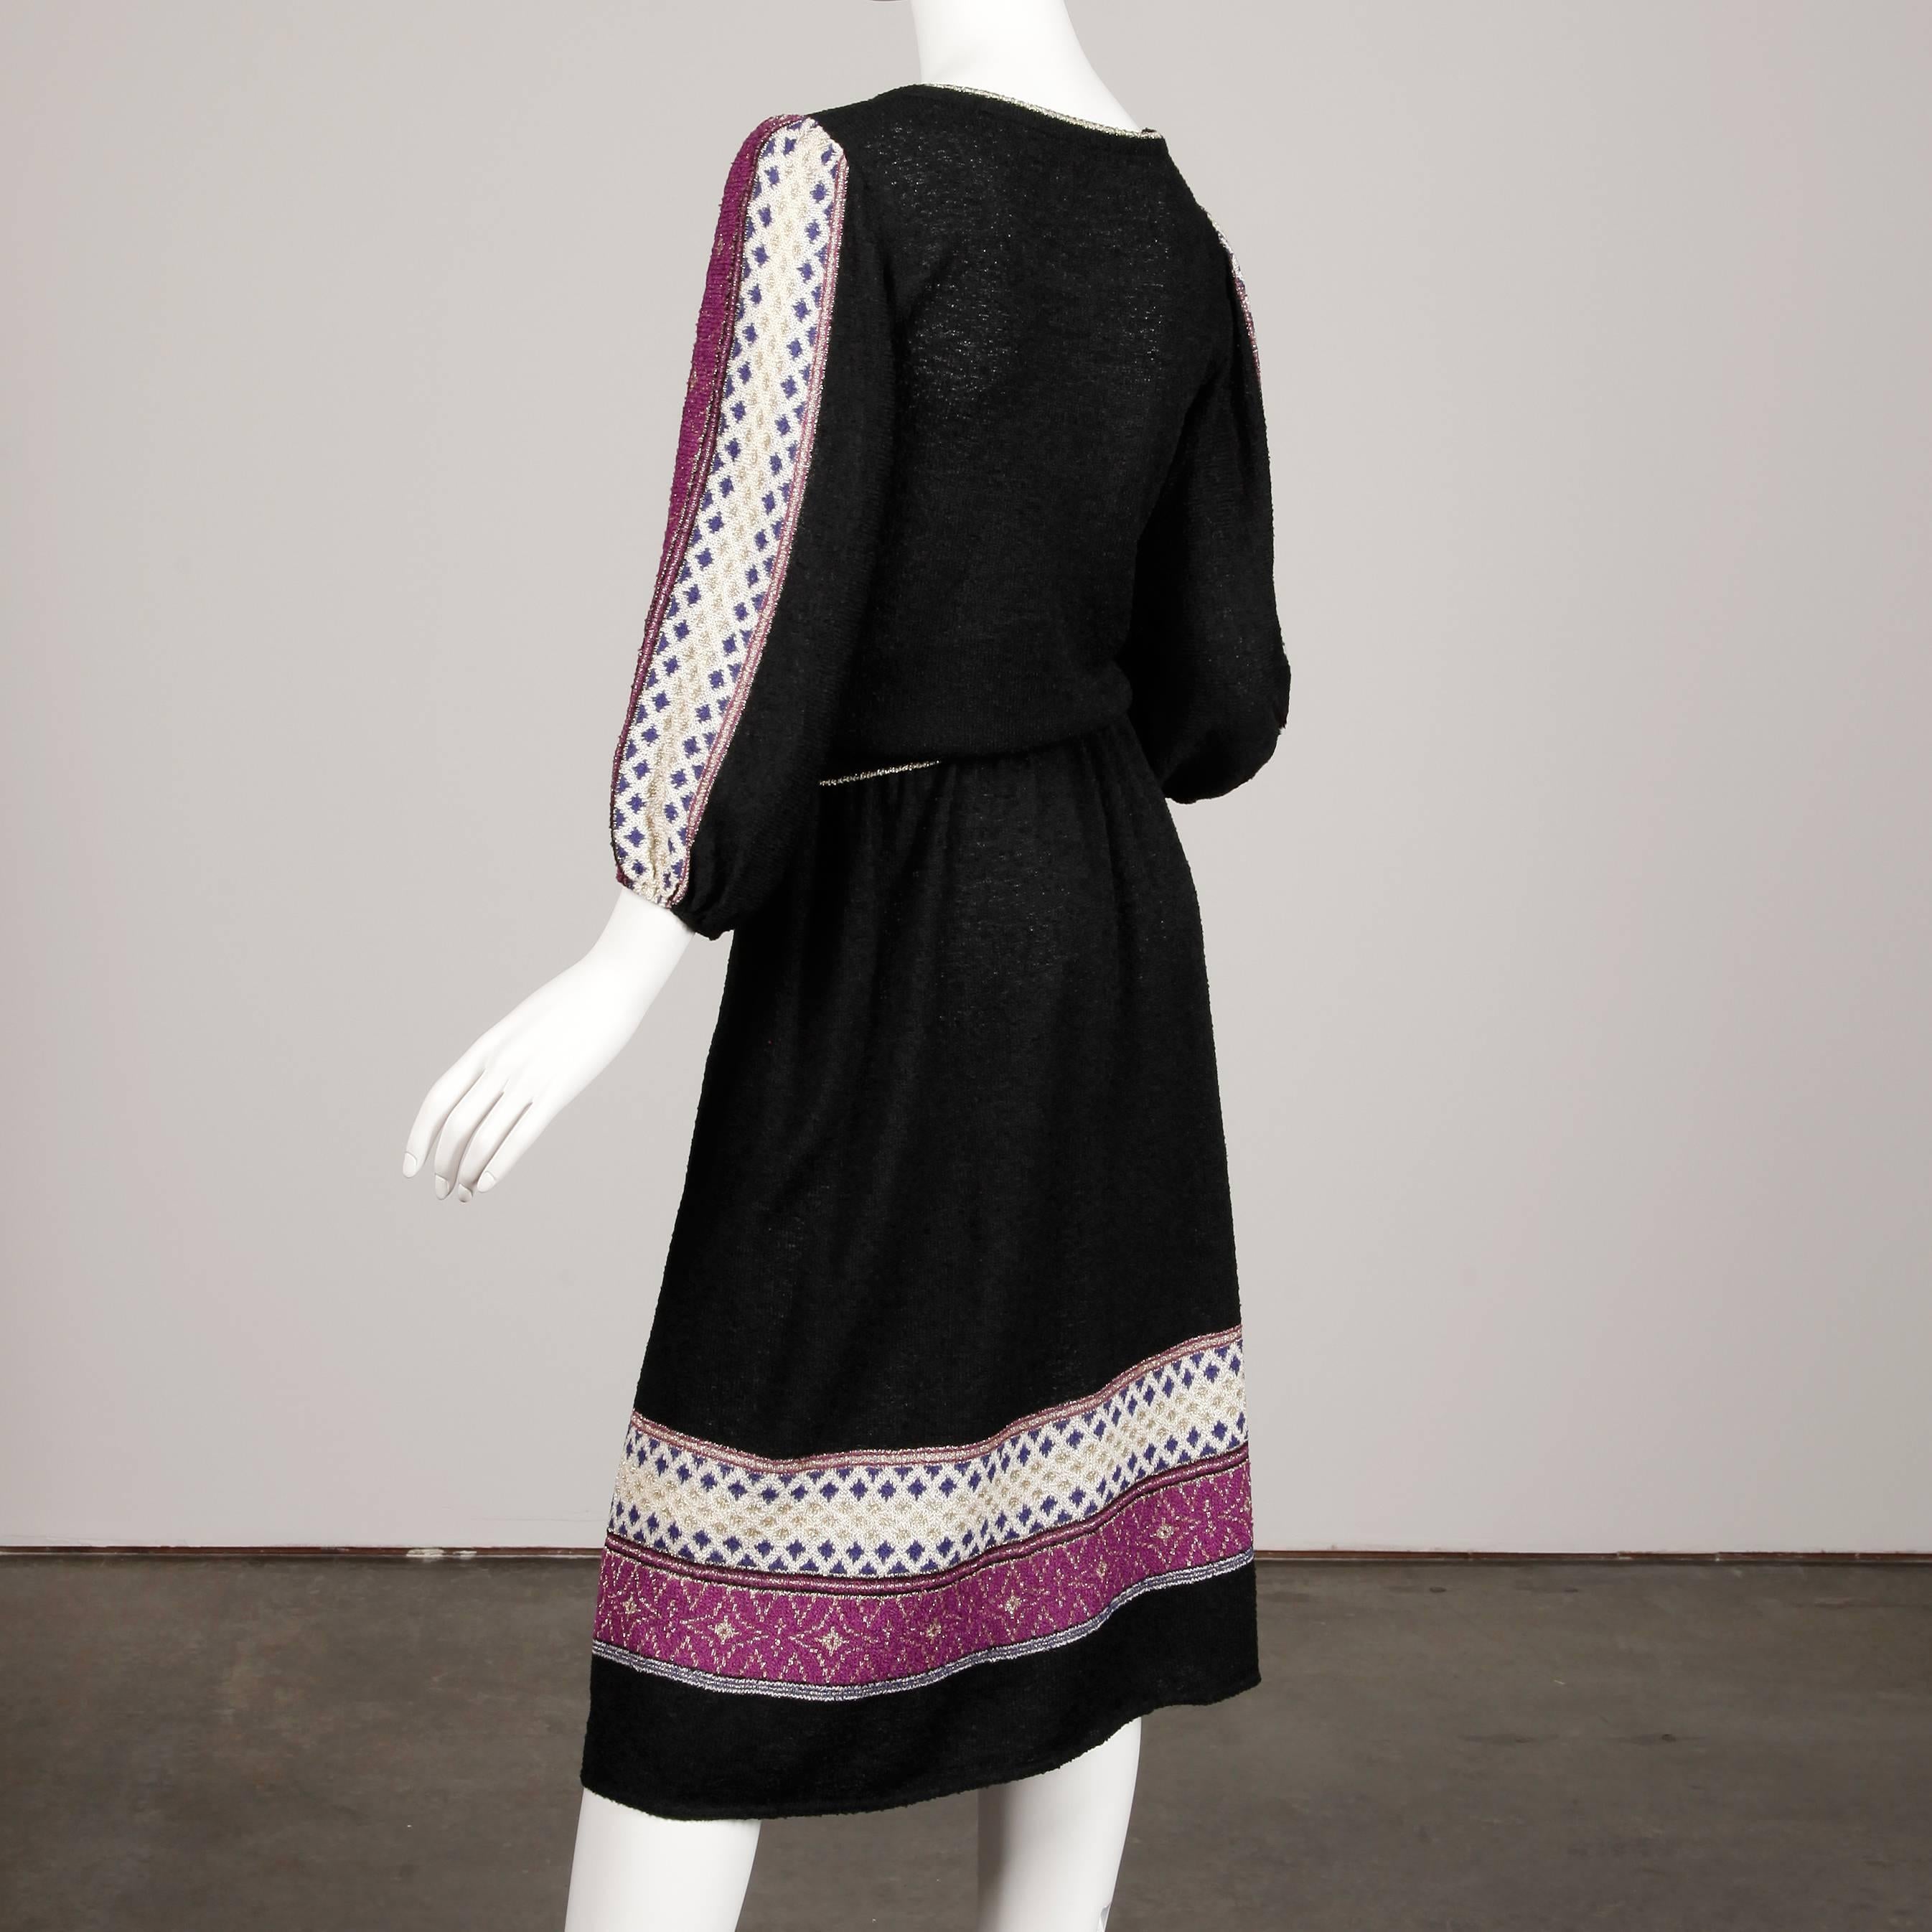 1970s Oscar de la Renta Vintage Knit Sweater Top, Skirt + Belt Dress Ensemble  In Excellent Condition For Sale In Sparks, NV